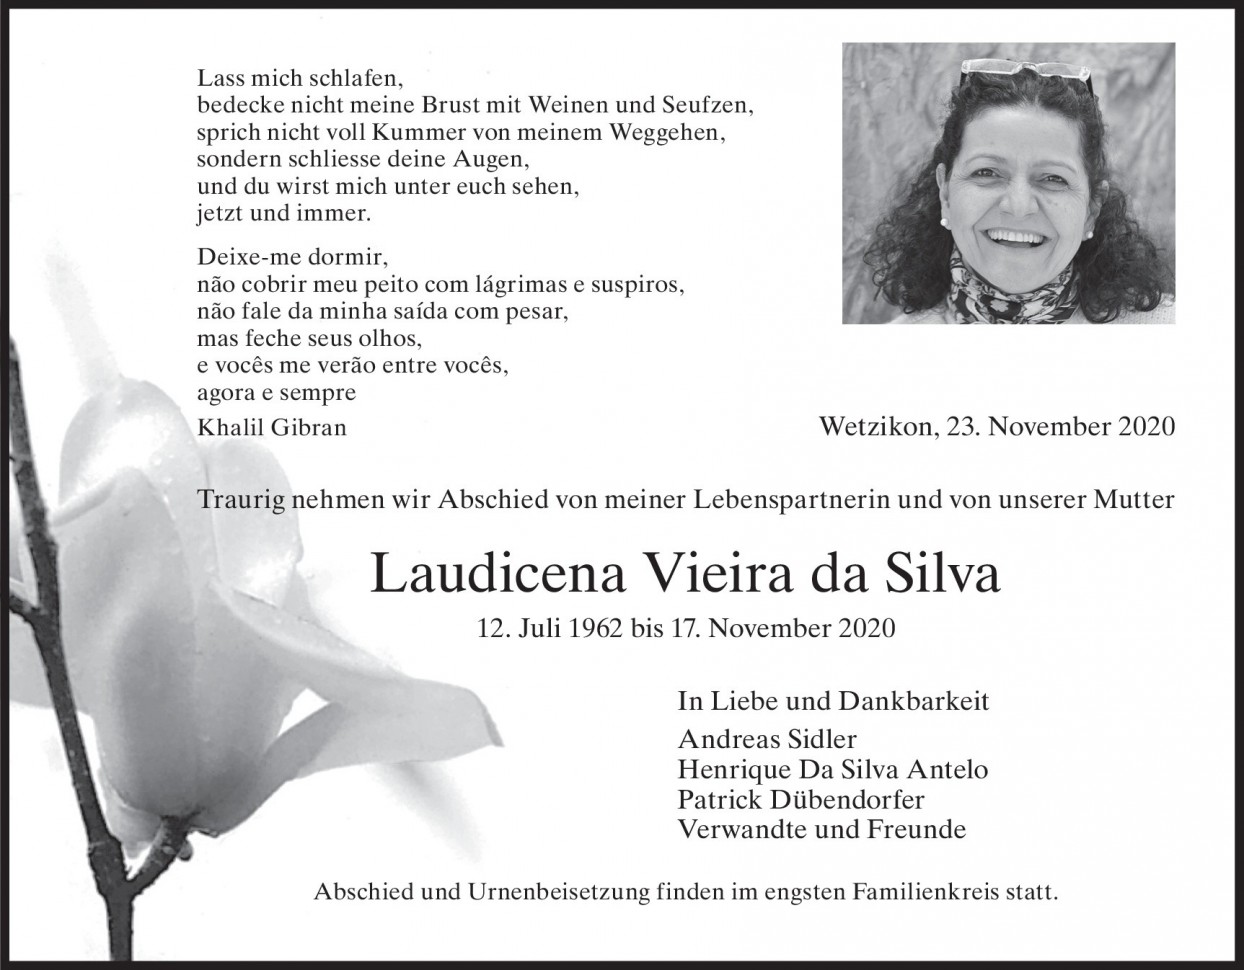 Laudicena Vieira da Silva